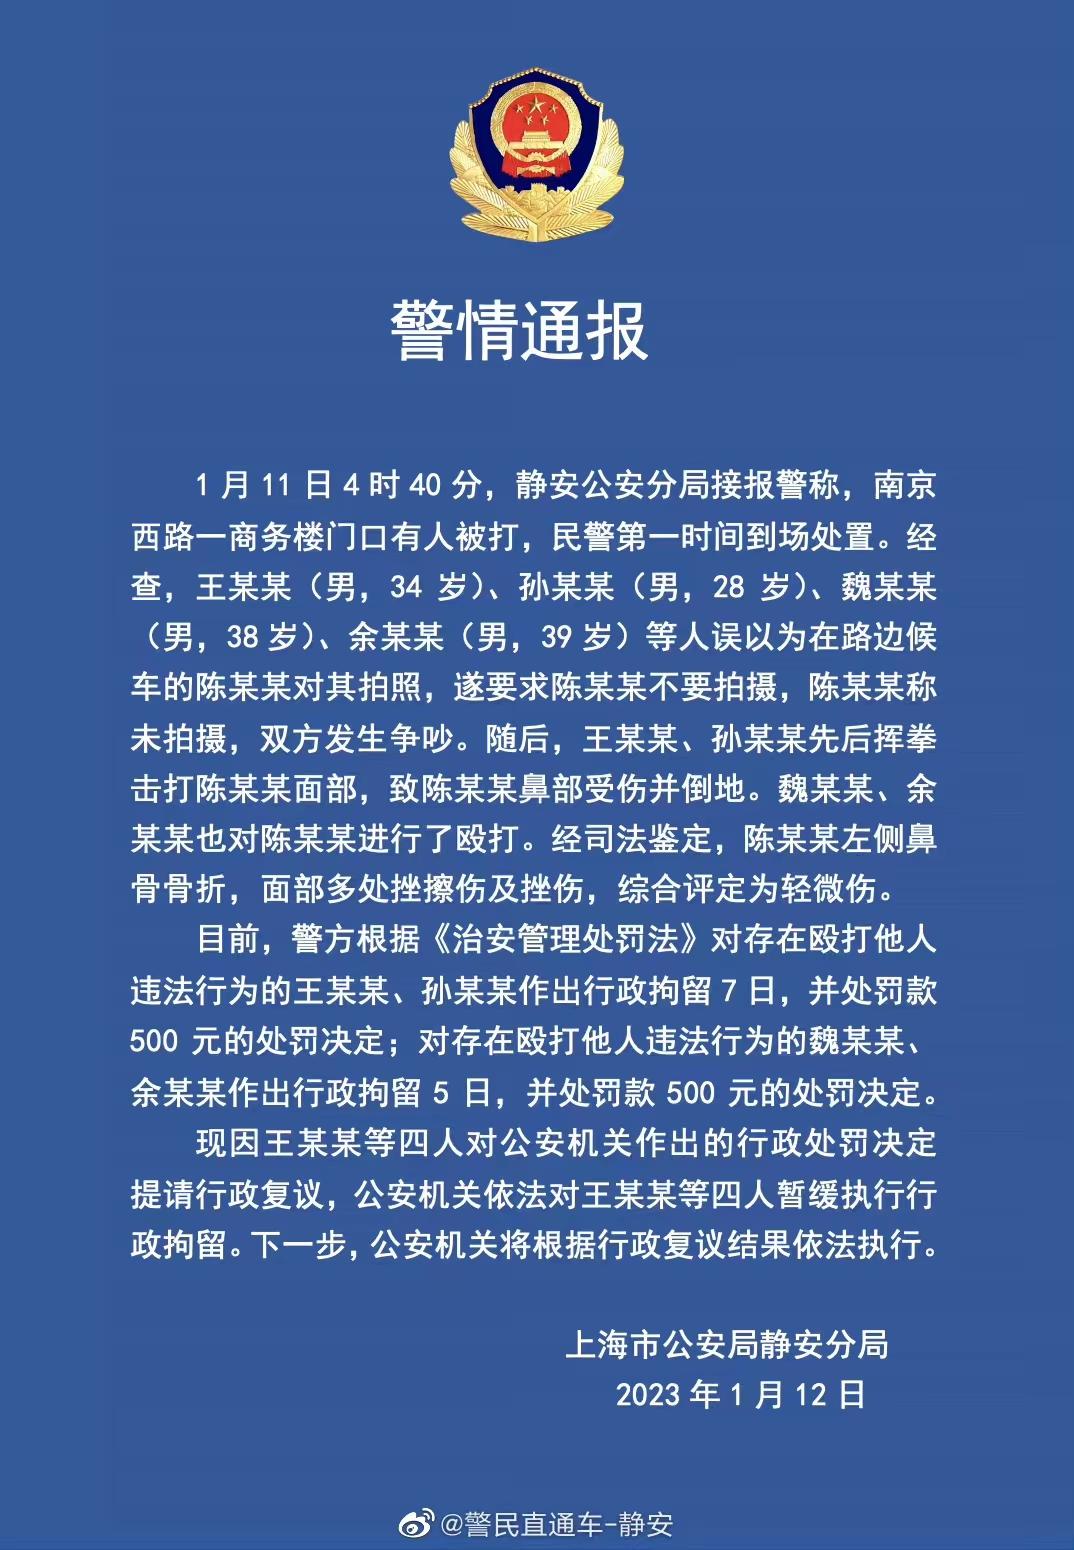 ↑上海静安警方发布的通报